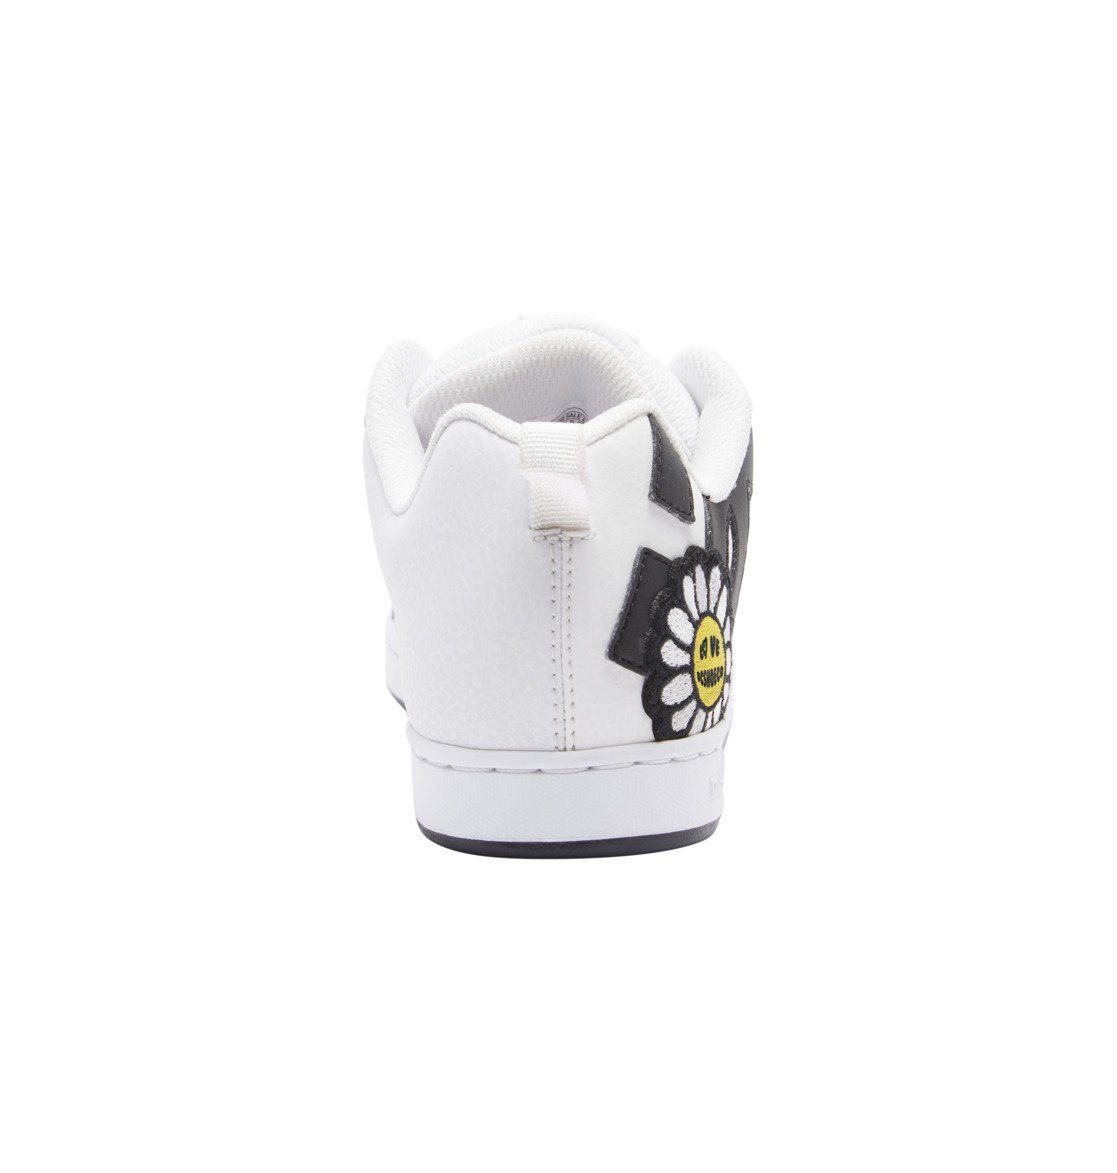 White/Black/Yellow Court DC Graffik Shoes Sneaker